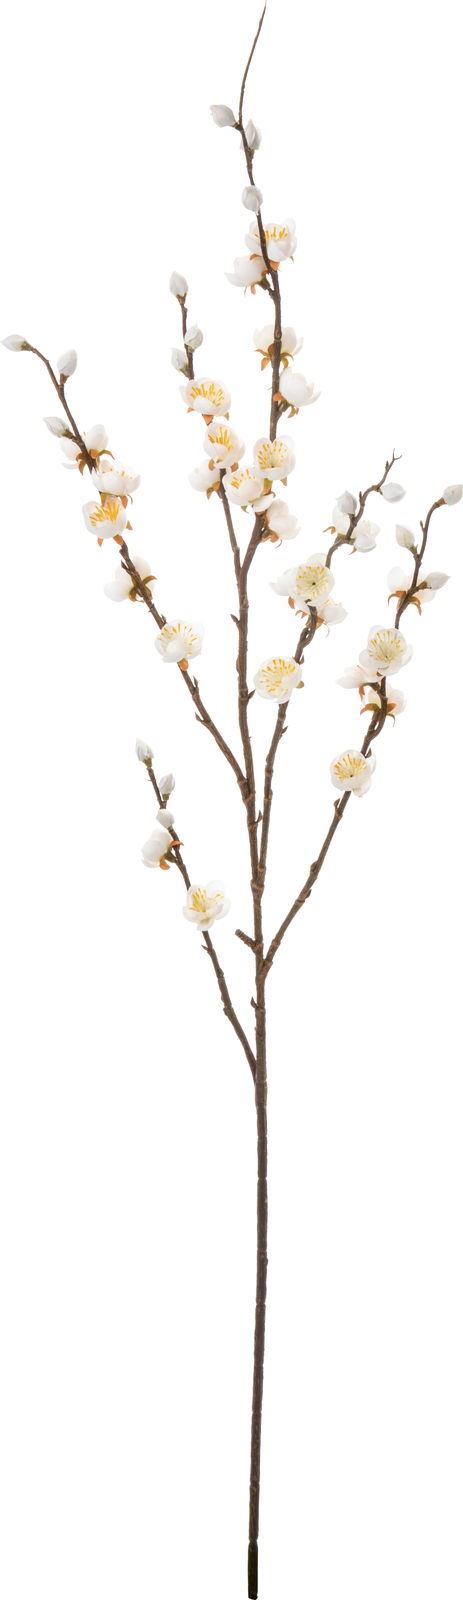 【造花】シーズナルタイプ初春 ウメブランチ ホワイト